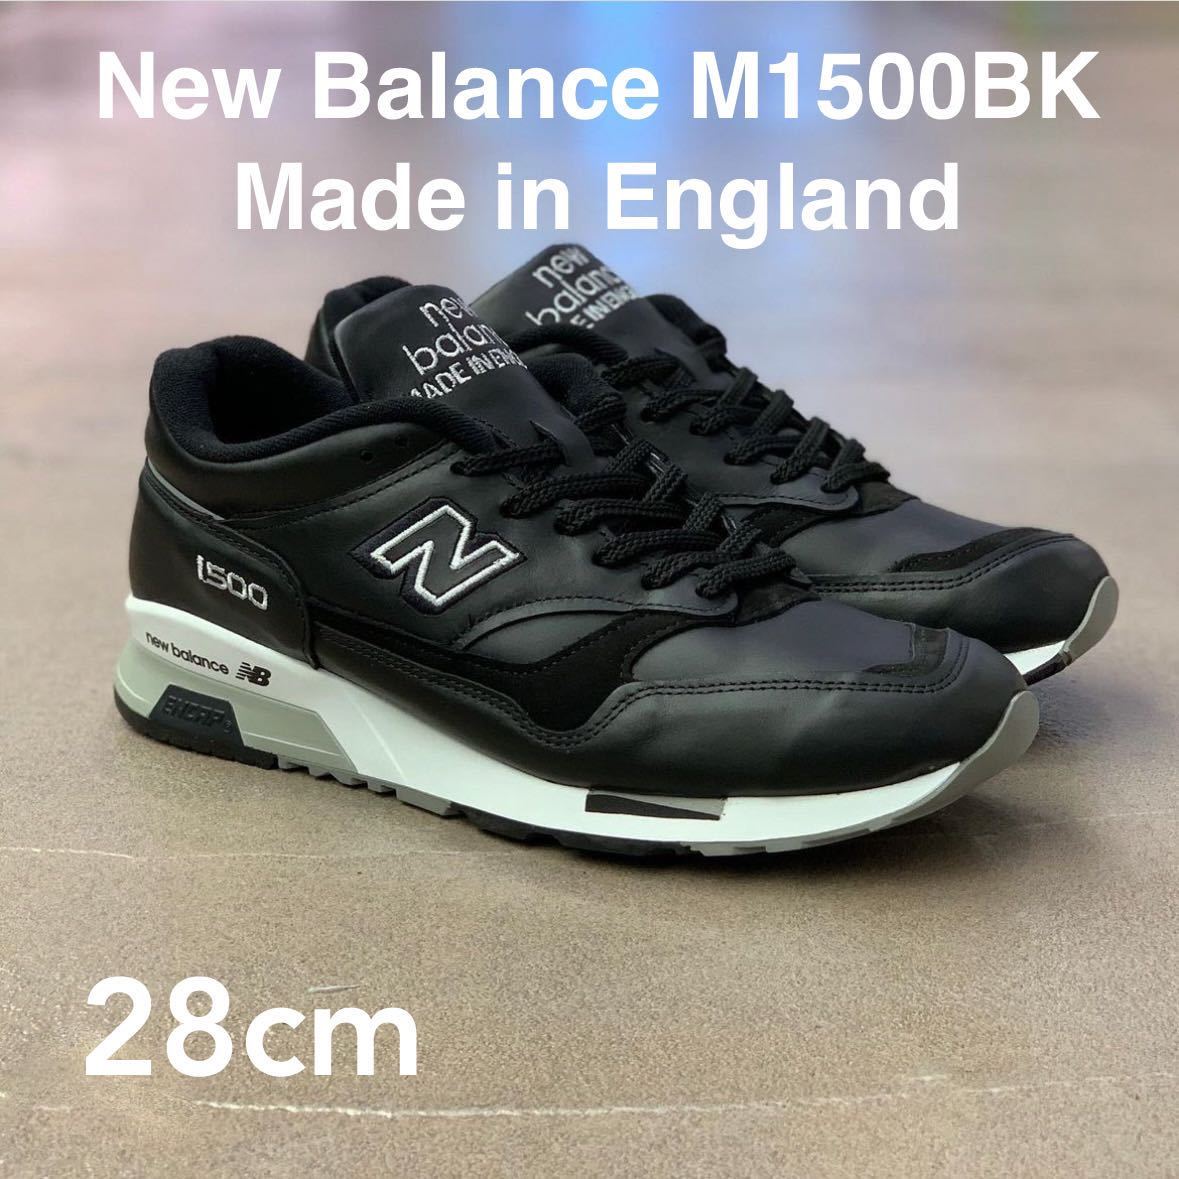 未使用 新品 28cm New Balance M1500BK ニューバランス Made in England 英国製 即完売 人気モデル ブラック 黒 レザー_画像1